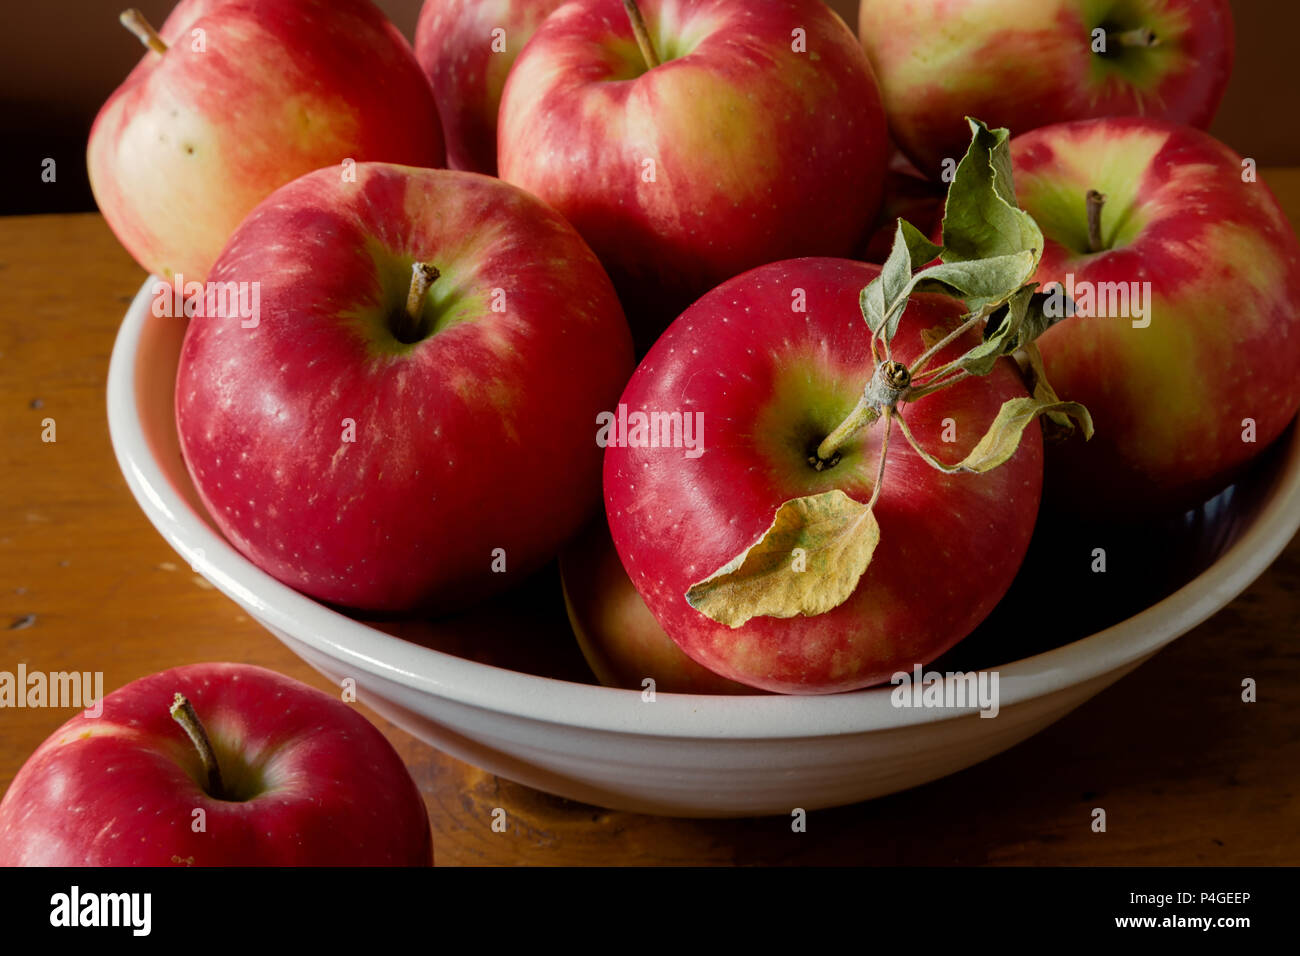 Ripe red honey crisp apples. Stock Photo